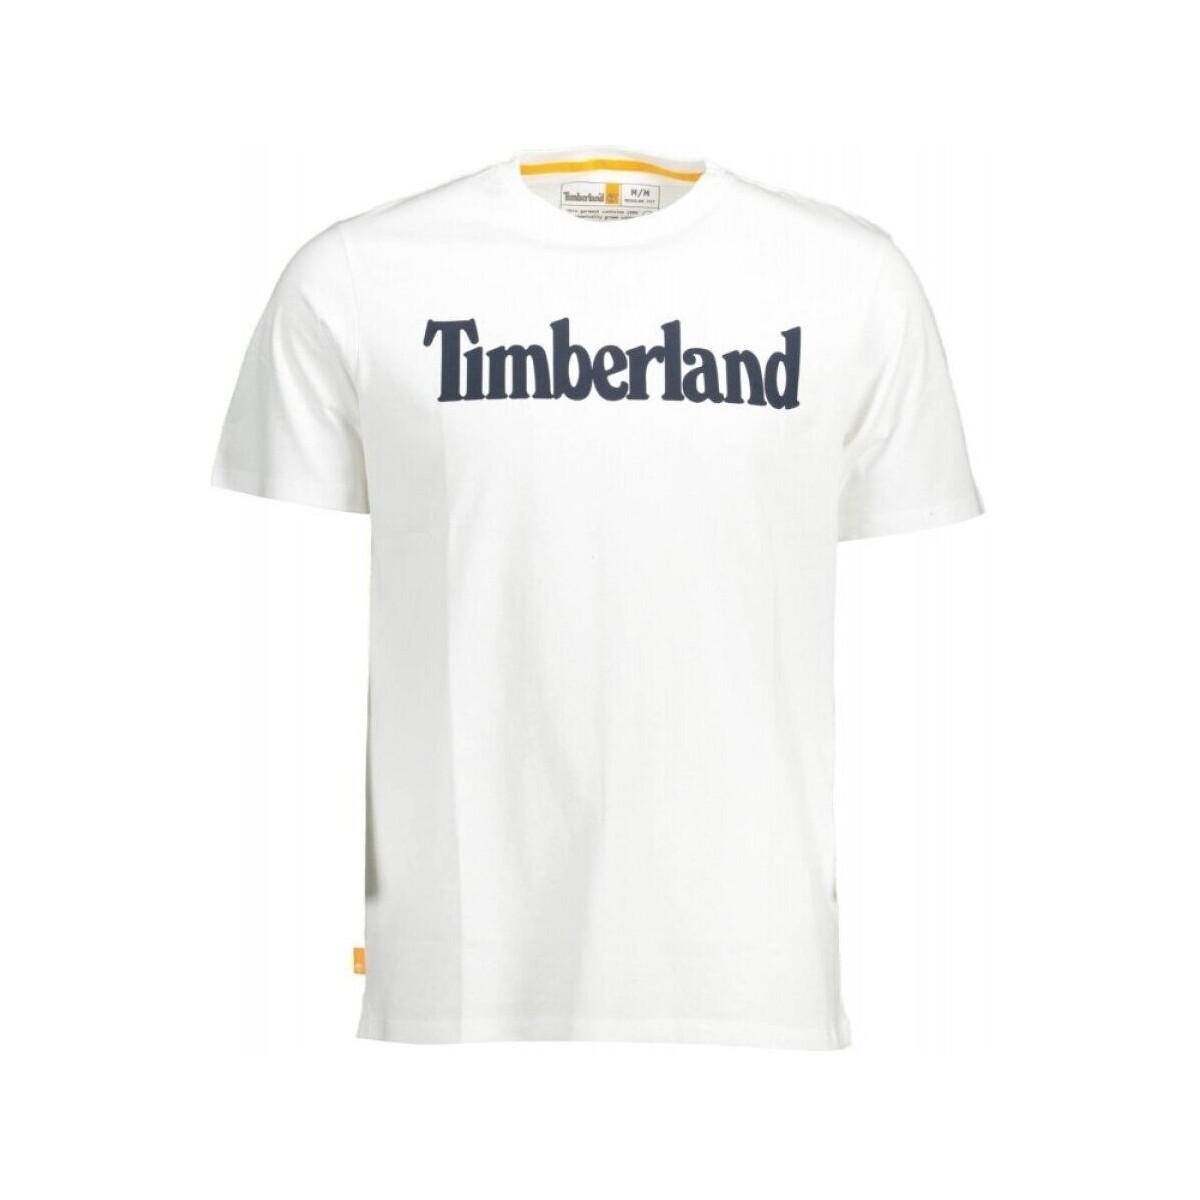 Textiel Heren T-shirts korte mouwen Timberland TB0A2BRN Wit